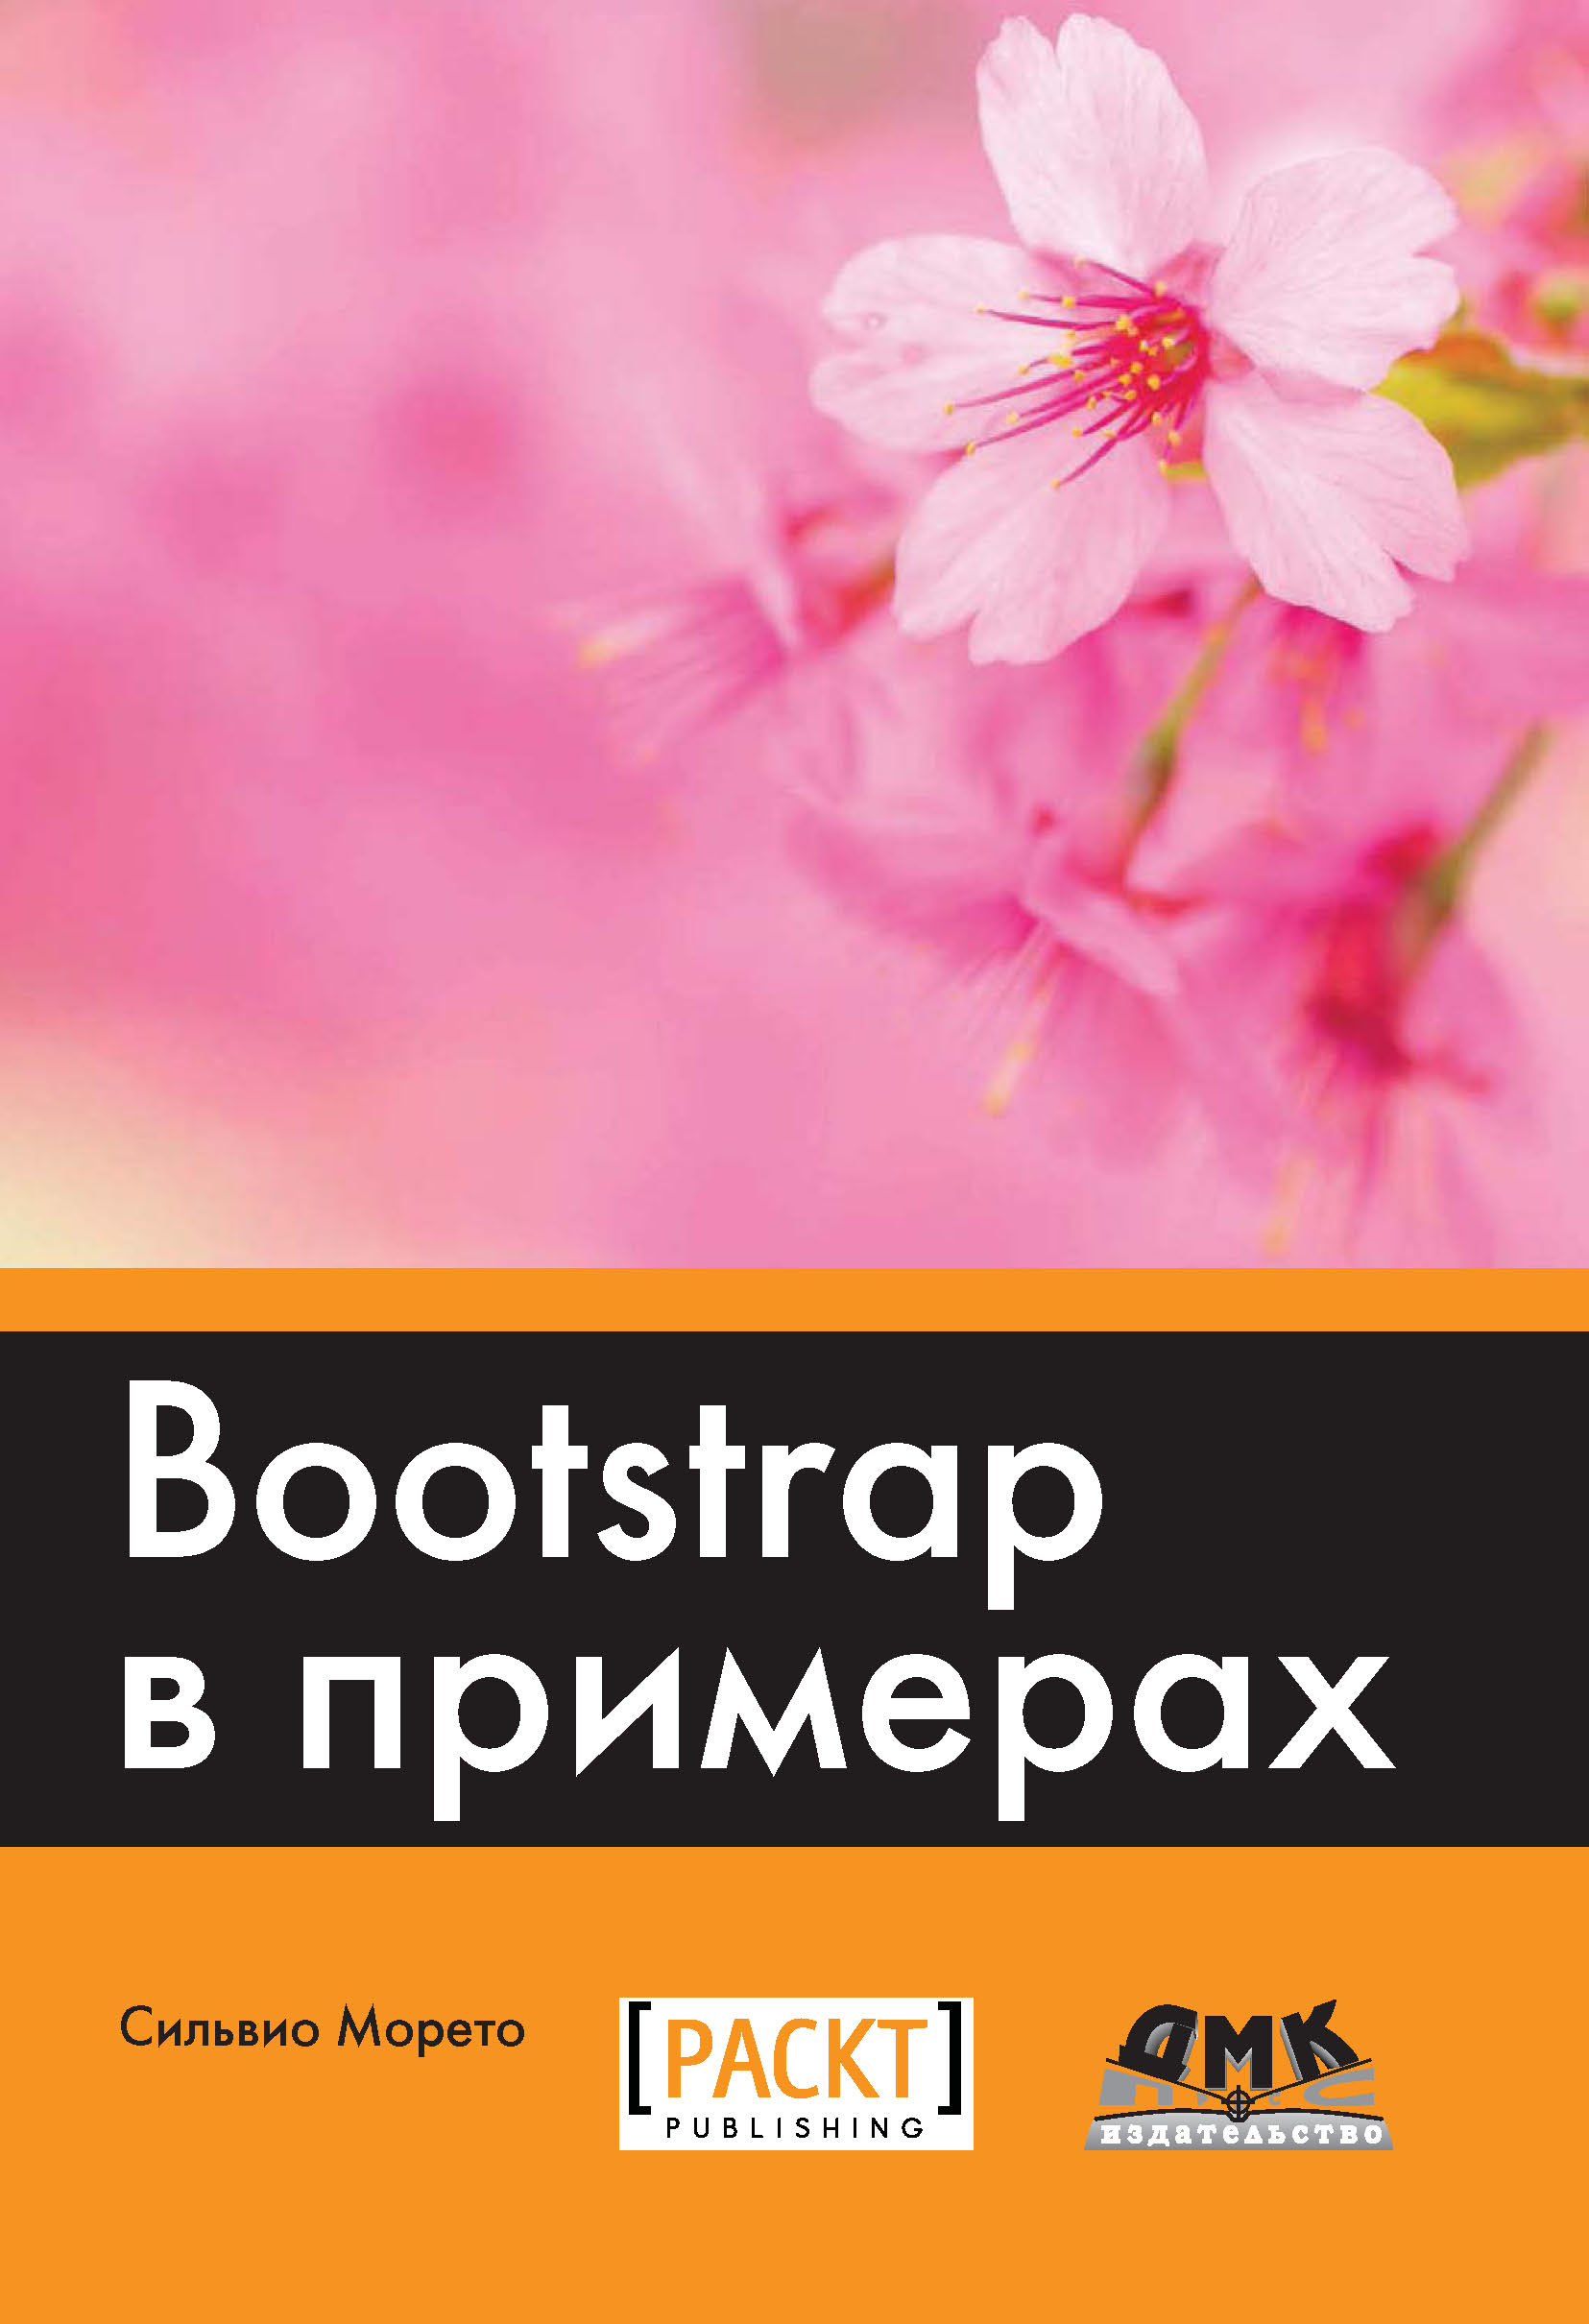 Книга  Bootstrap в примерах созданная Сильвио Морето, Р. Н. Рагимов может относится к жанру зарубежная компьютерная литература, интернет, программирование. Стоимость электронной книги Bootstrap в примерах с идентификатором 22780728 составляет 559.00 руб.